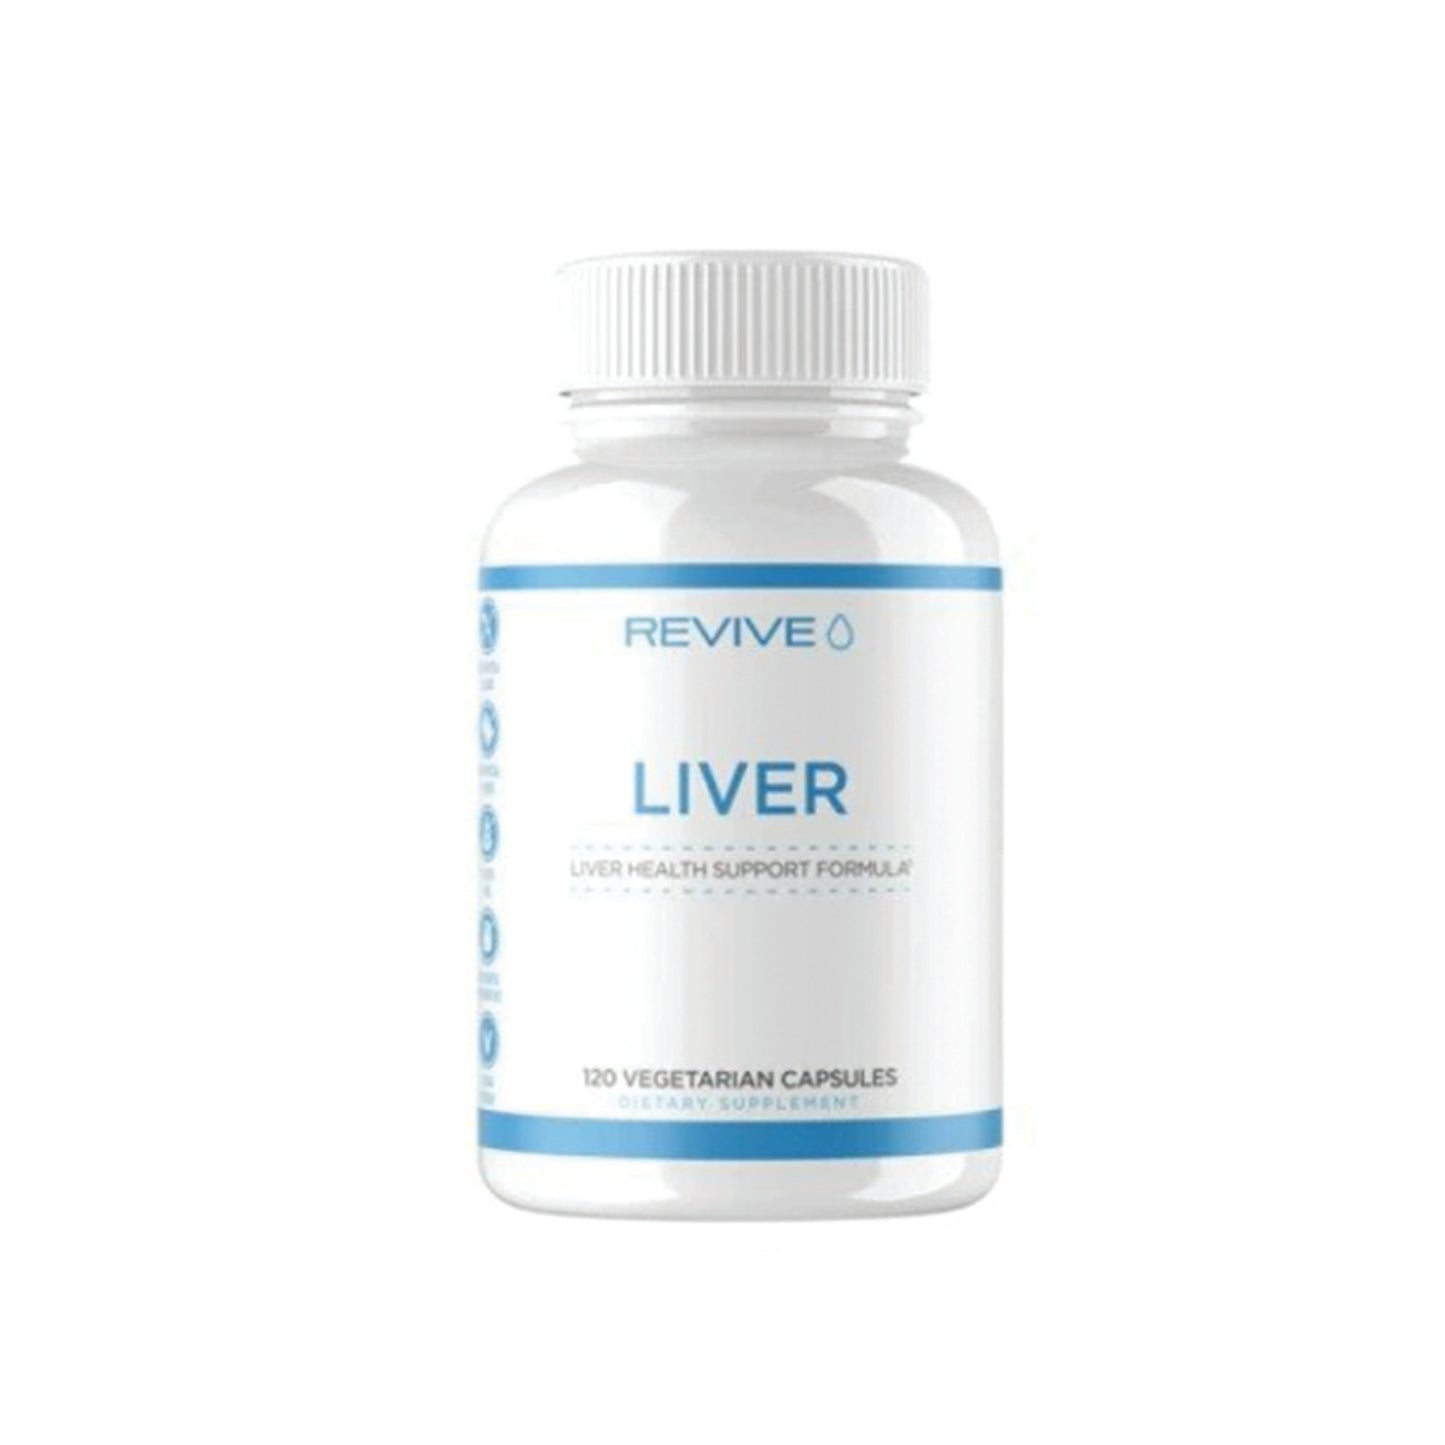 Revive, Liver - 120 Vegetarian Capsules